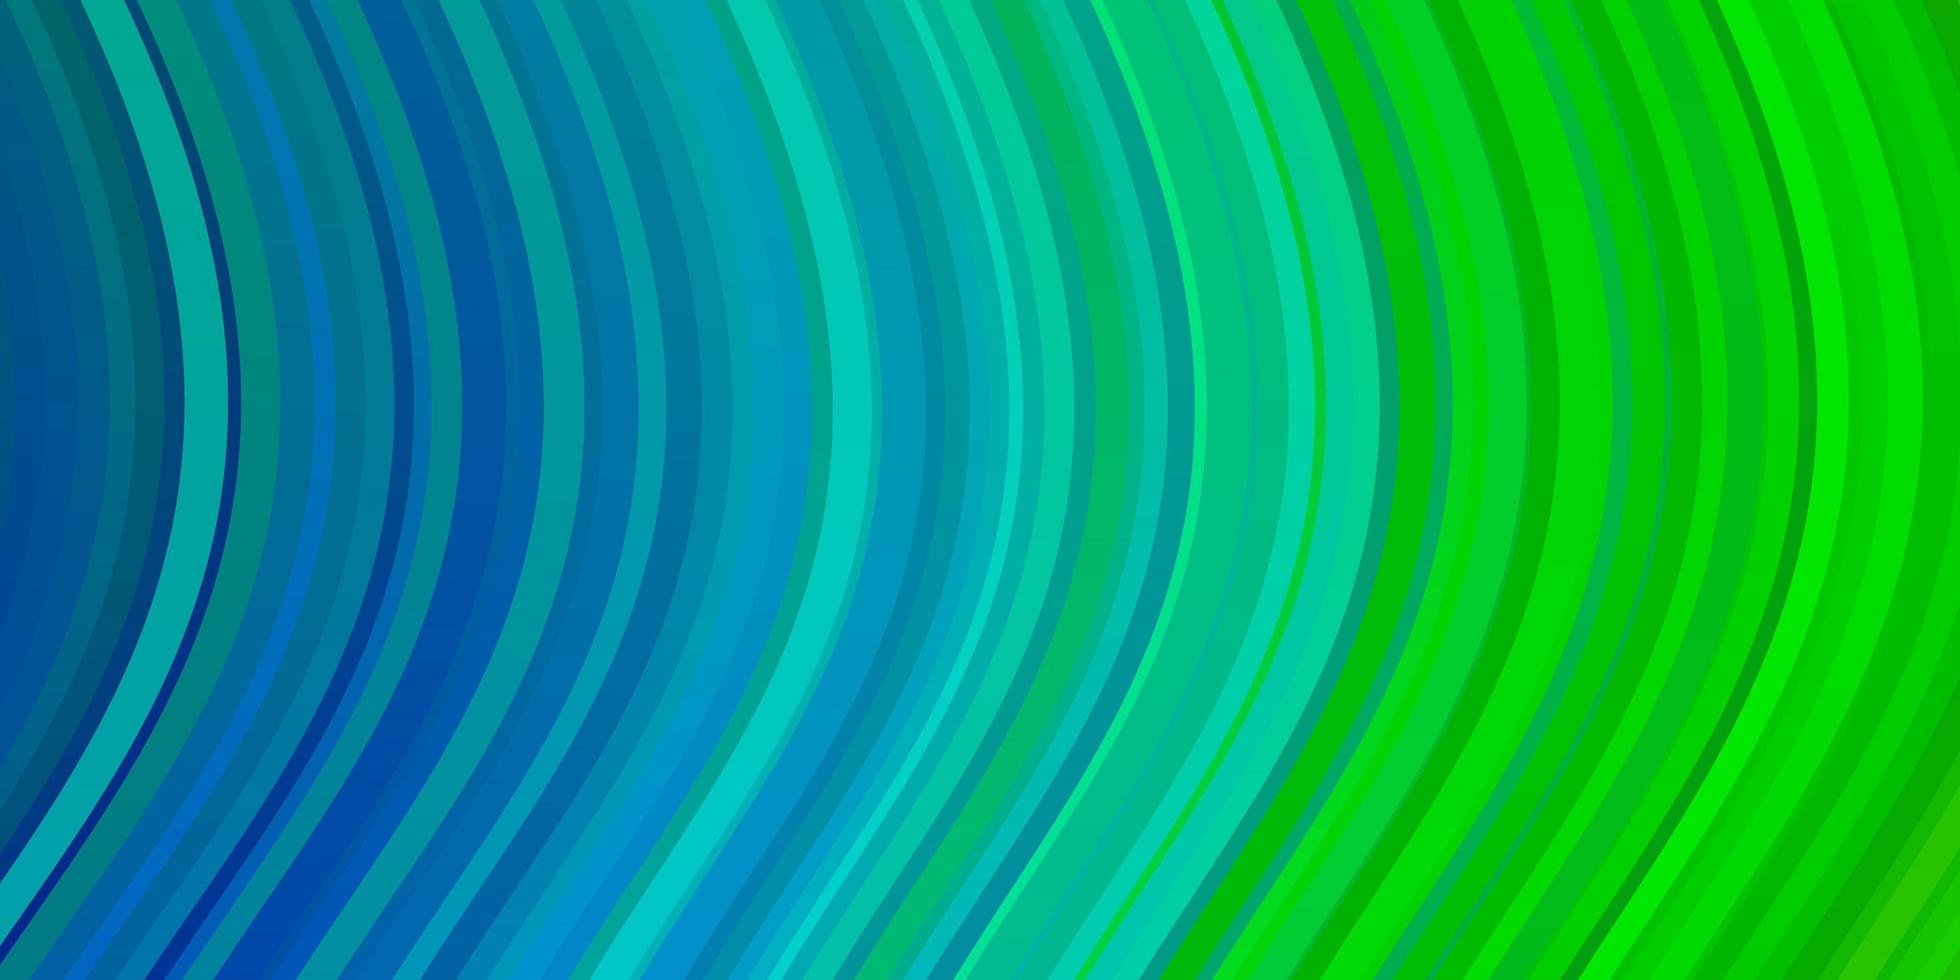 ljusblå, grön vektorbakgrund med bågar. vektor